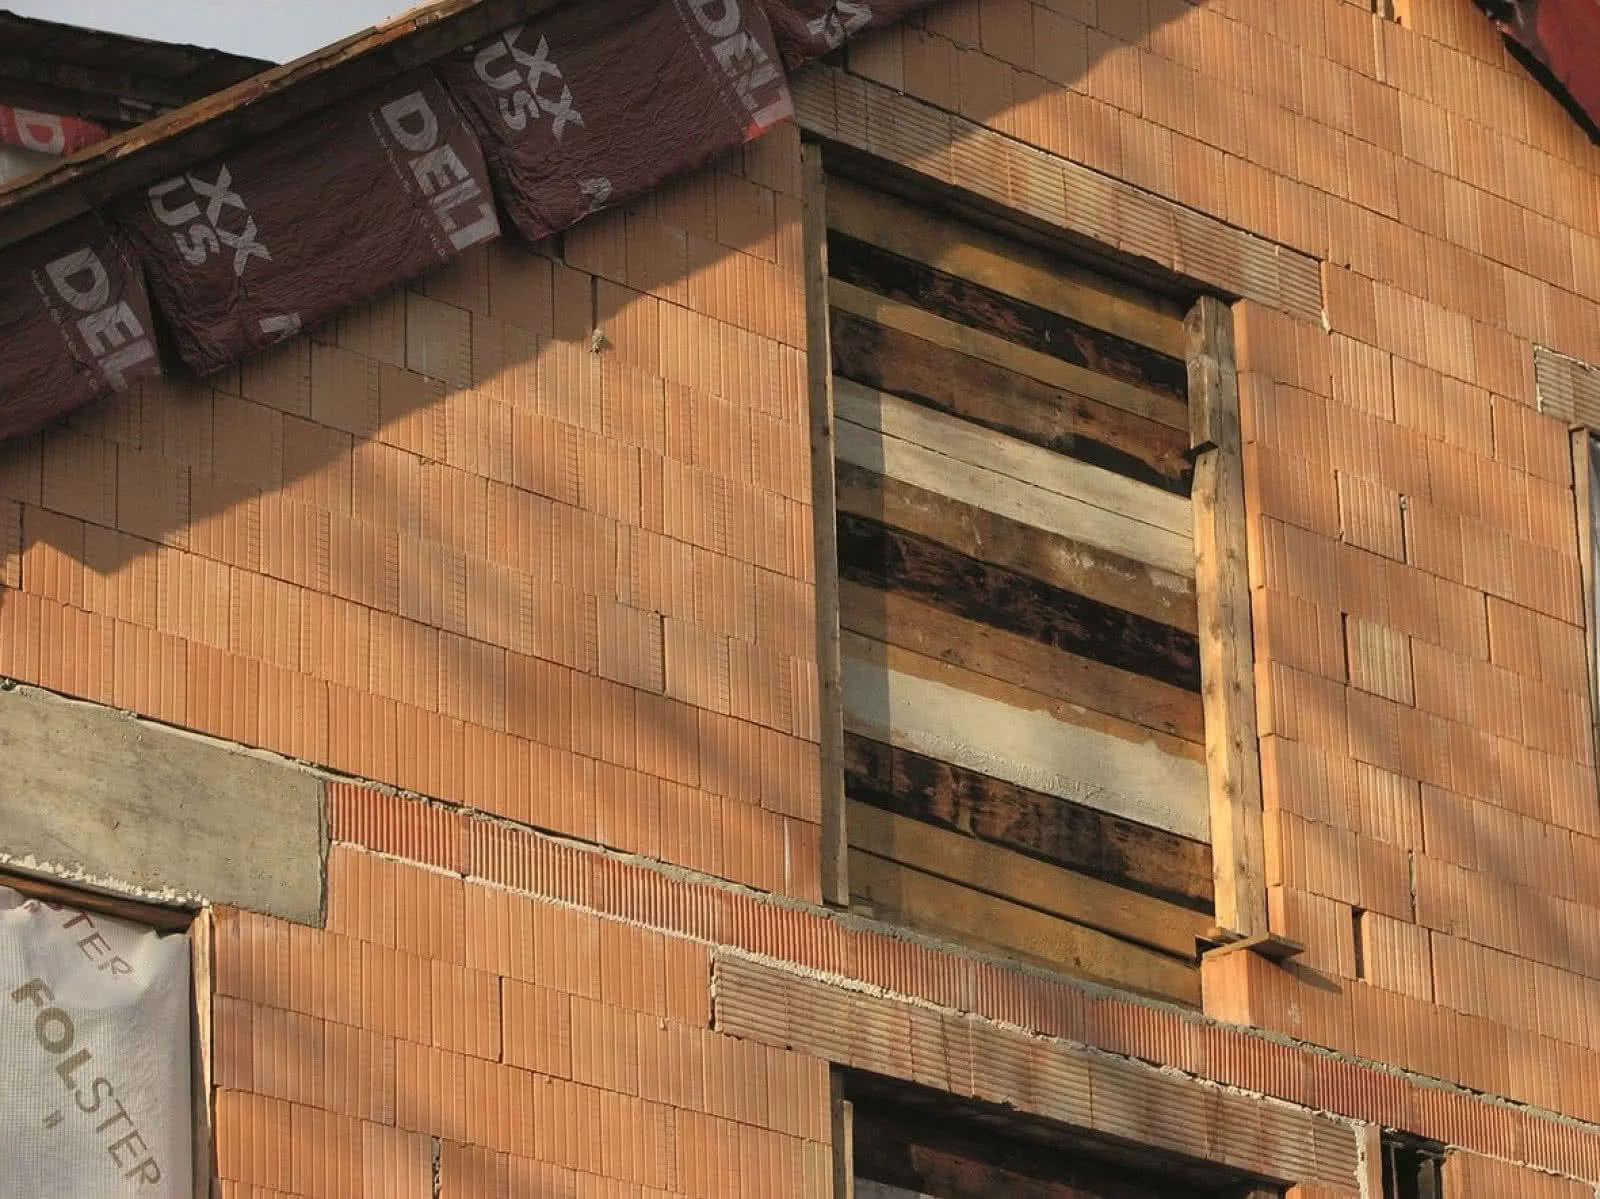 Zabezpieczenie otworów okiennych deskami przed nadejściem zimy budynku w stanie surowym. fot. Tomasz Rybarczyk